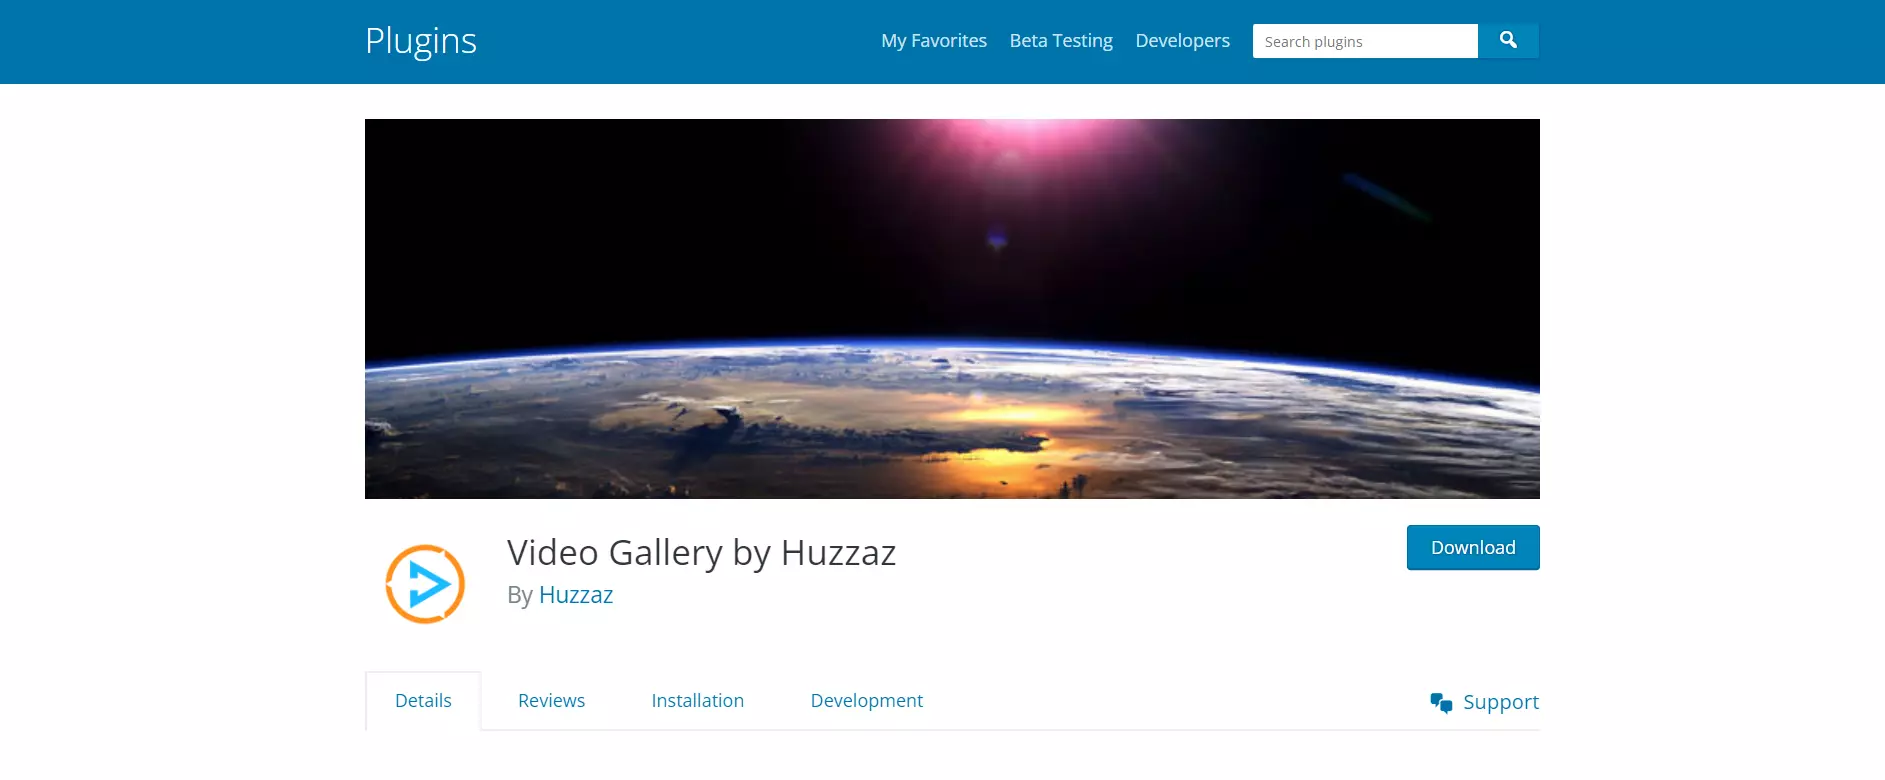 Huzzaz video gallery